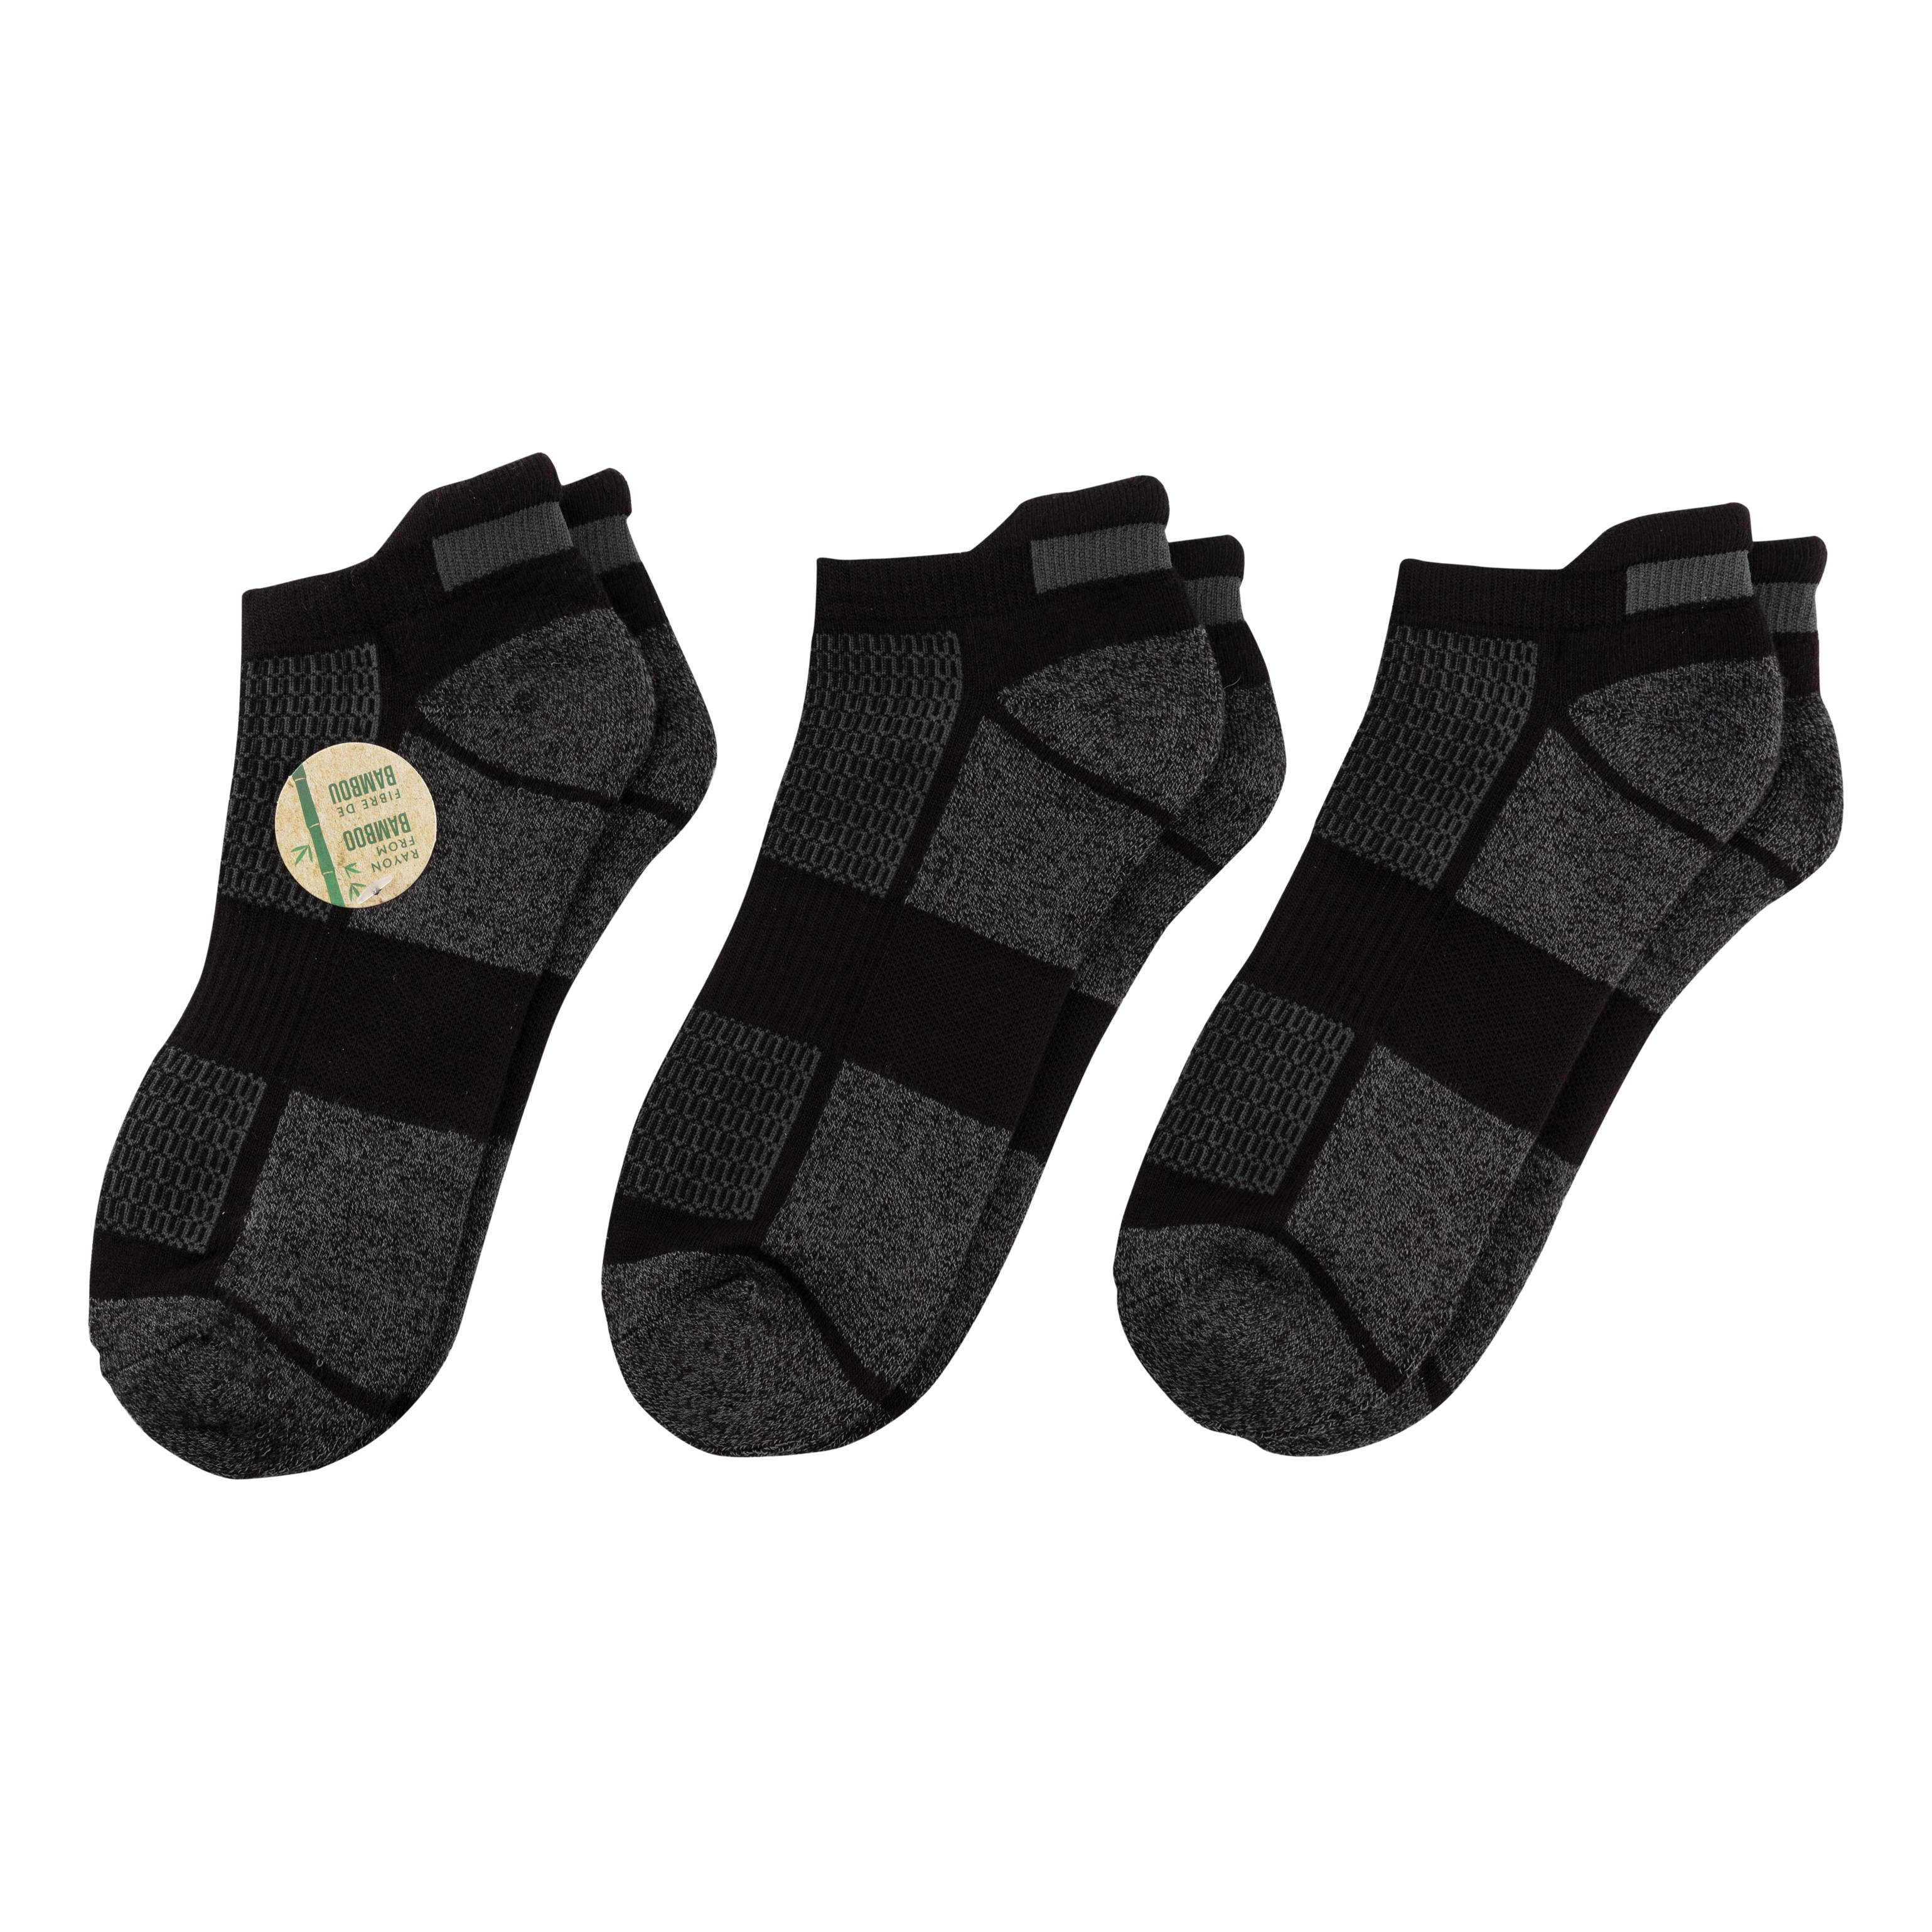 Sof Sole Men’s Low-Cut Perfom Socks - Black Marl